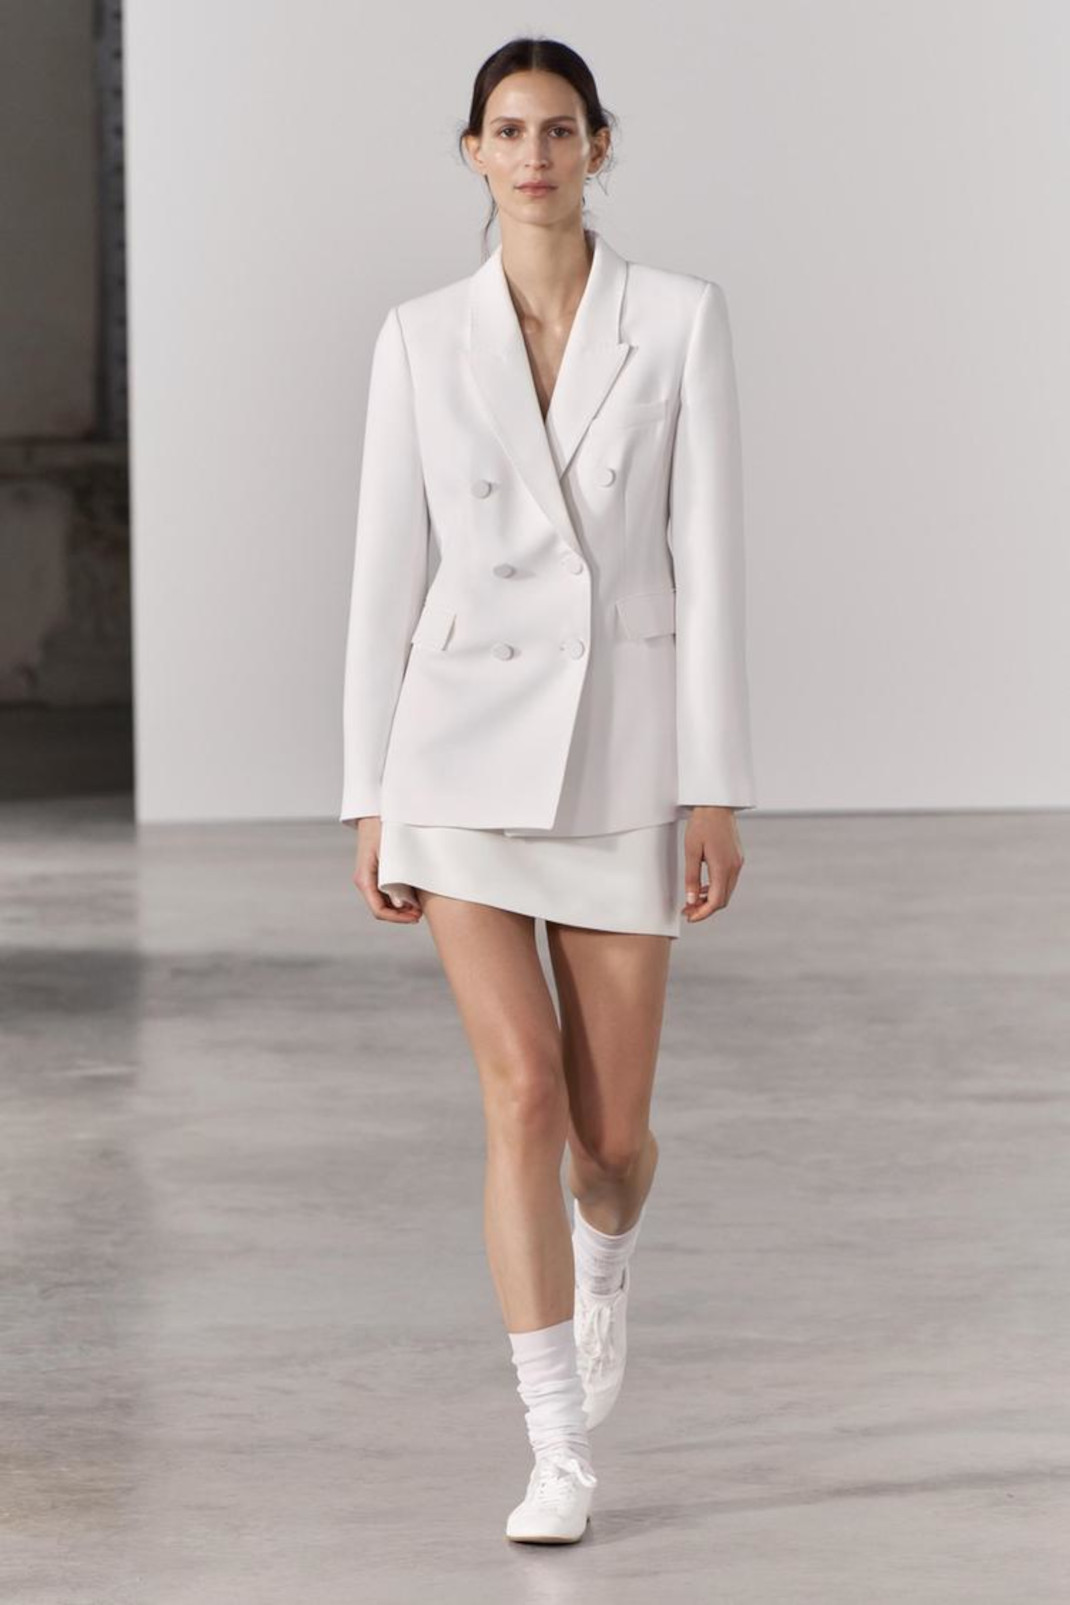 Η Σταματίνα Τσιμτσιλή με skirt suit από τα Zara -Η τέλεια αγορά αν παντρεύεσαι με πολιτικό γάμο 